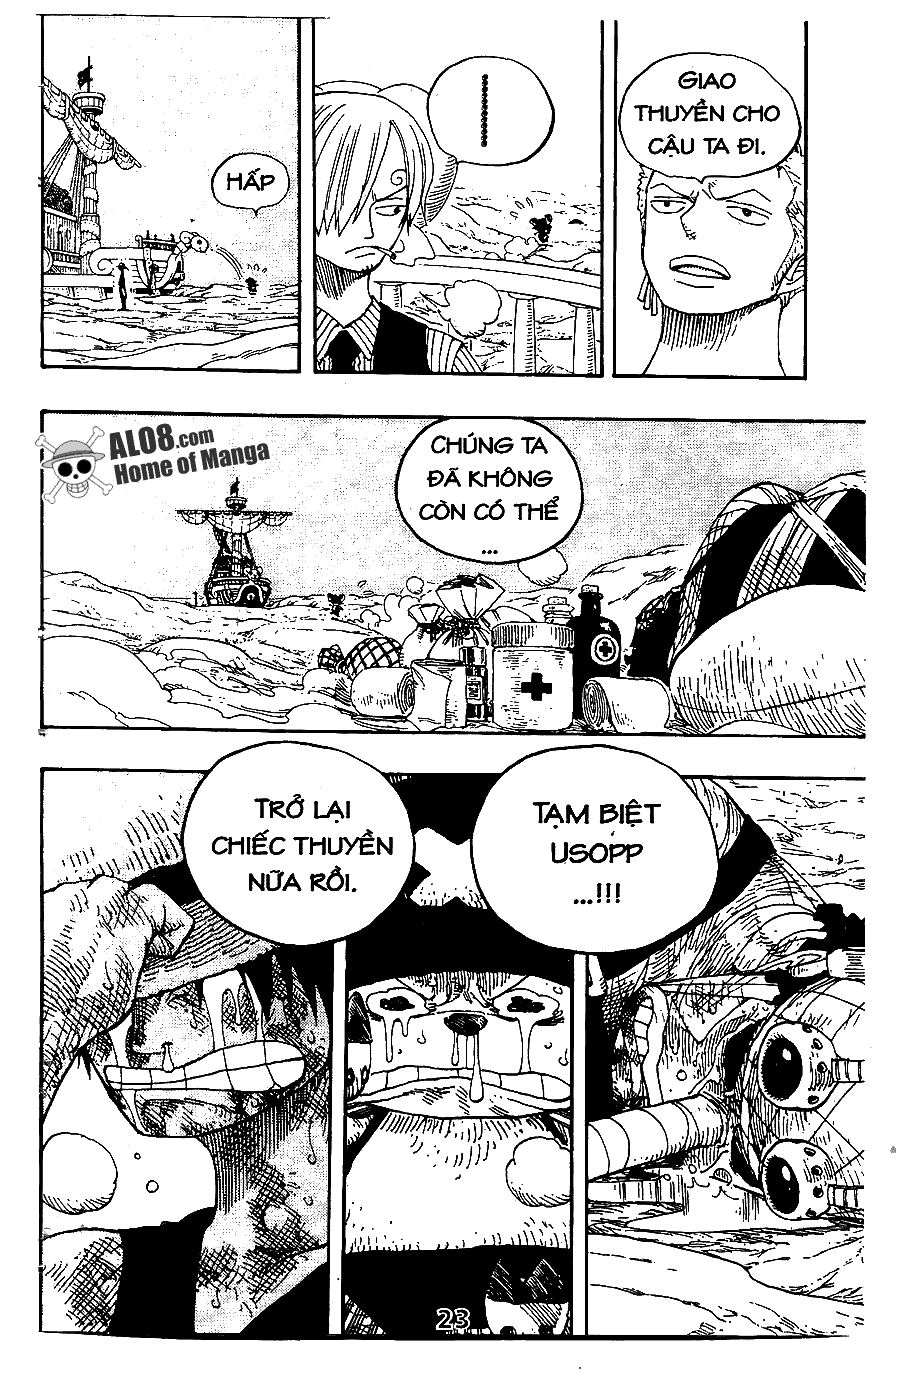 [Event] Gởi gắm tình cảm đến Luffy!! - Page 2 IMG_0021